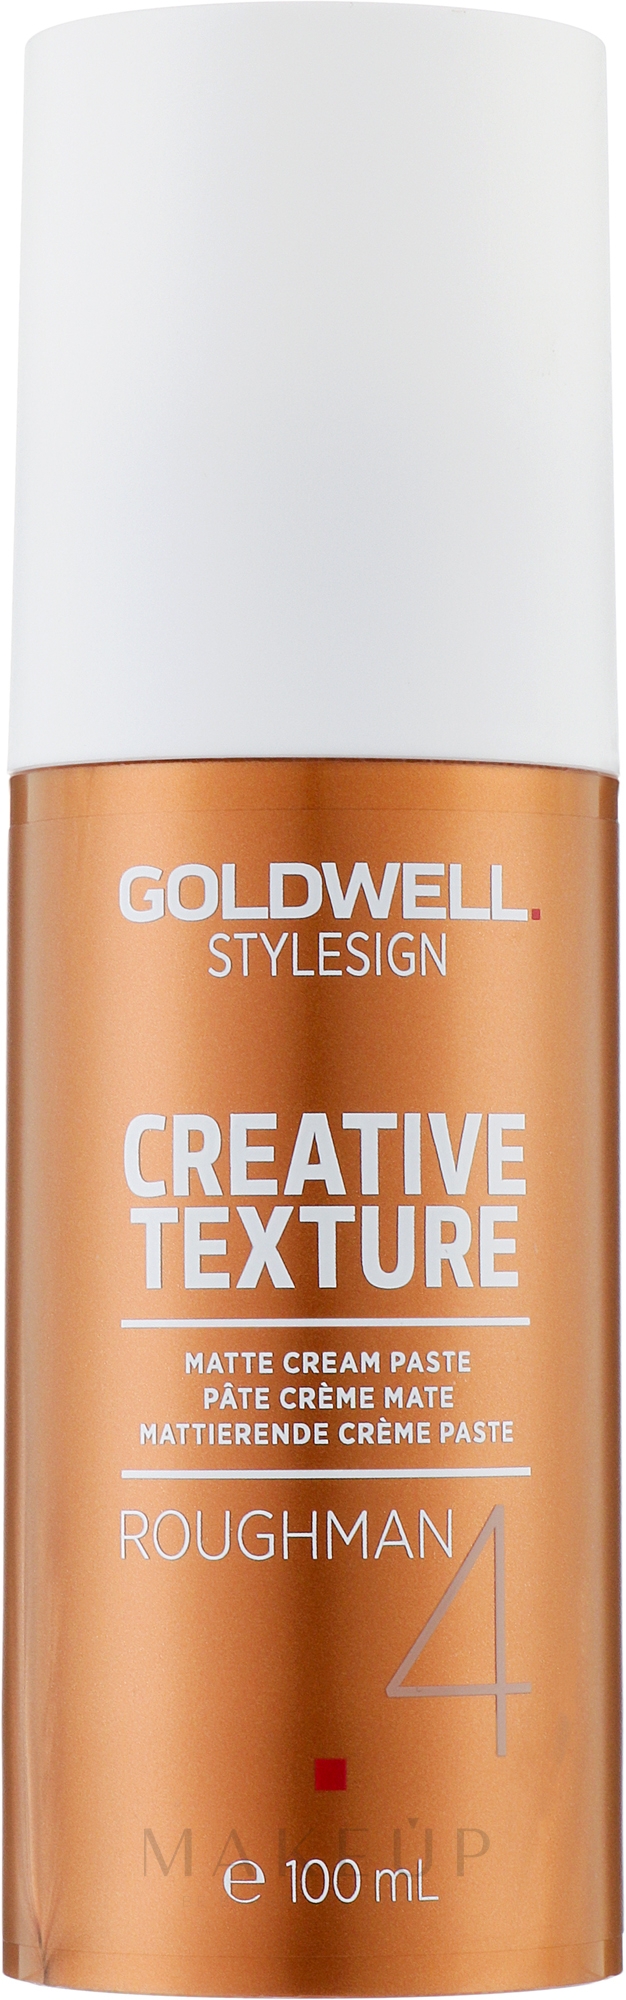 Cremige Haarpaste mit Matt-Effekt - Goldwell Style Sign Creative Texture Roughman Matte Cream Paste — Bild 100 ml